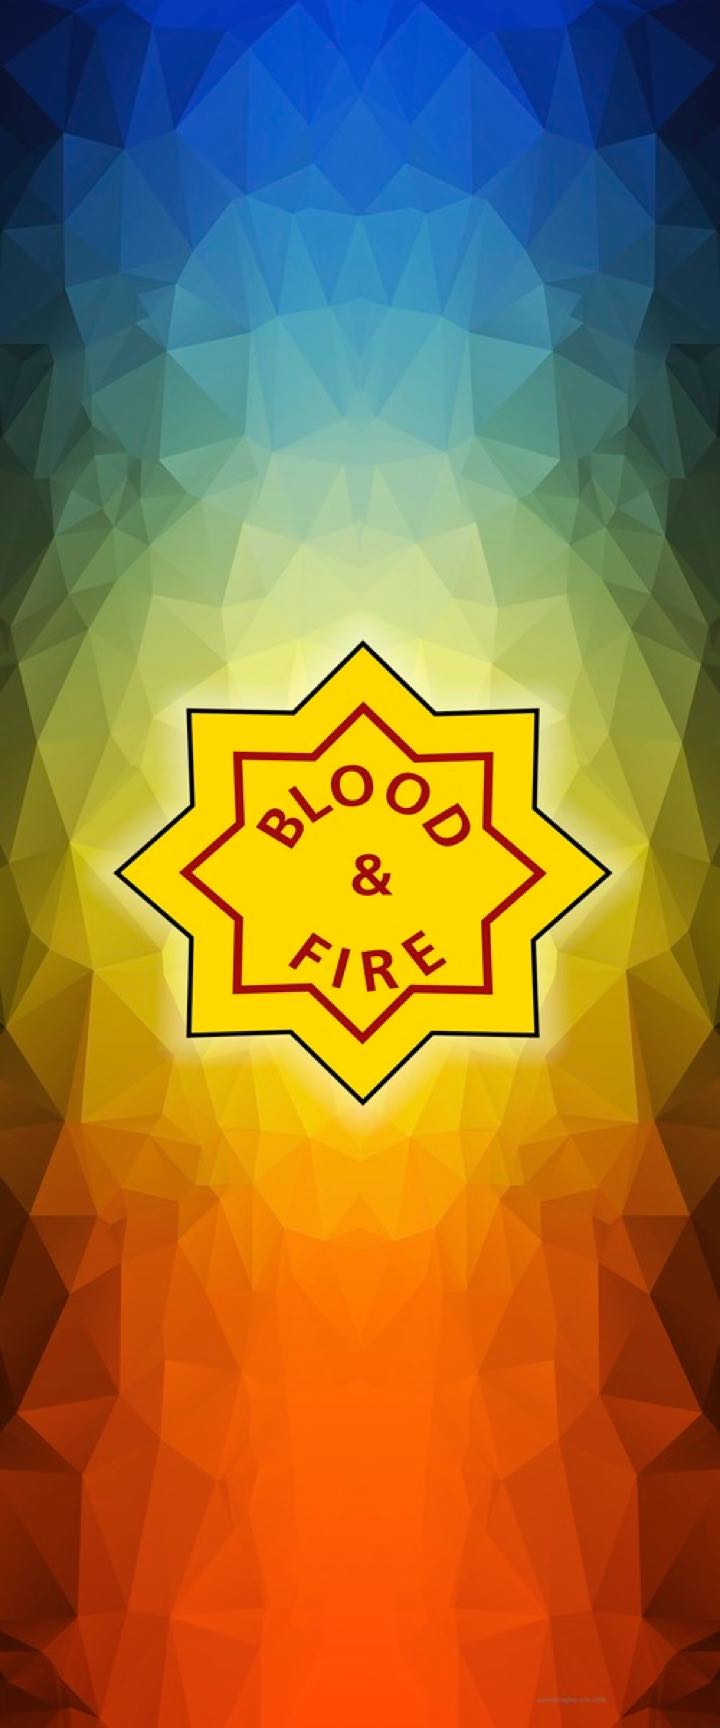 Blood & Fire Cubist Design Poster